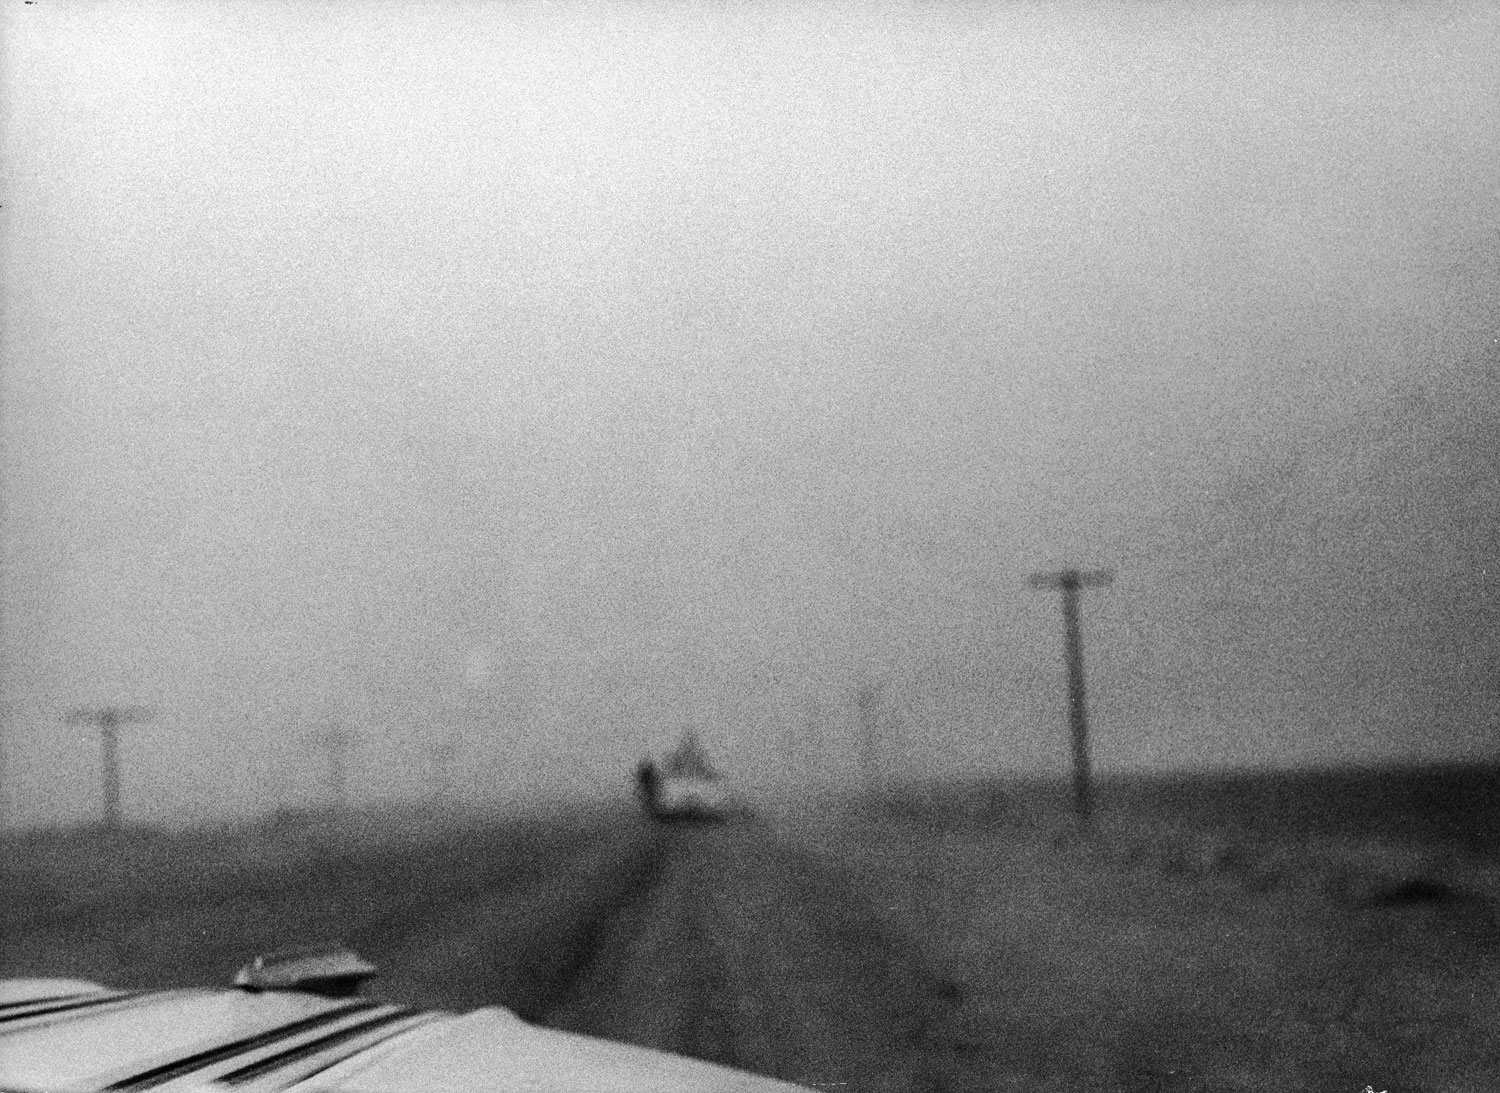 Colorado Dust Bowl, 1954.